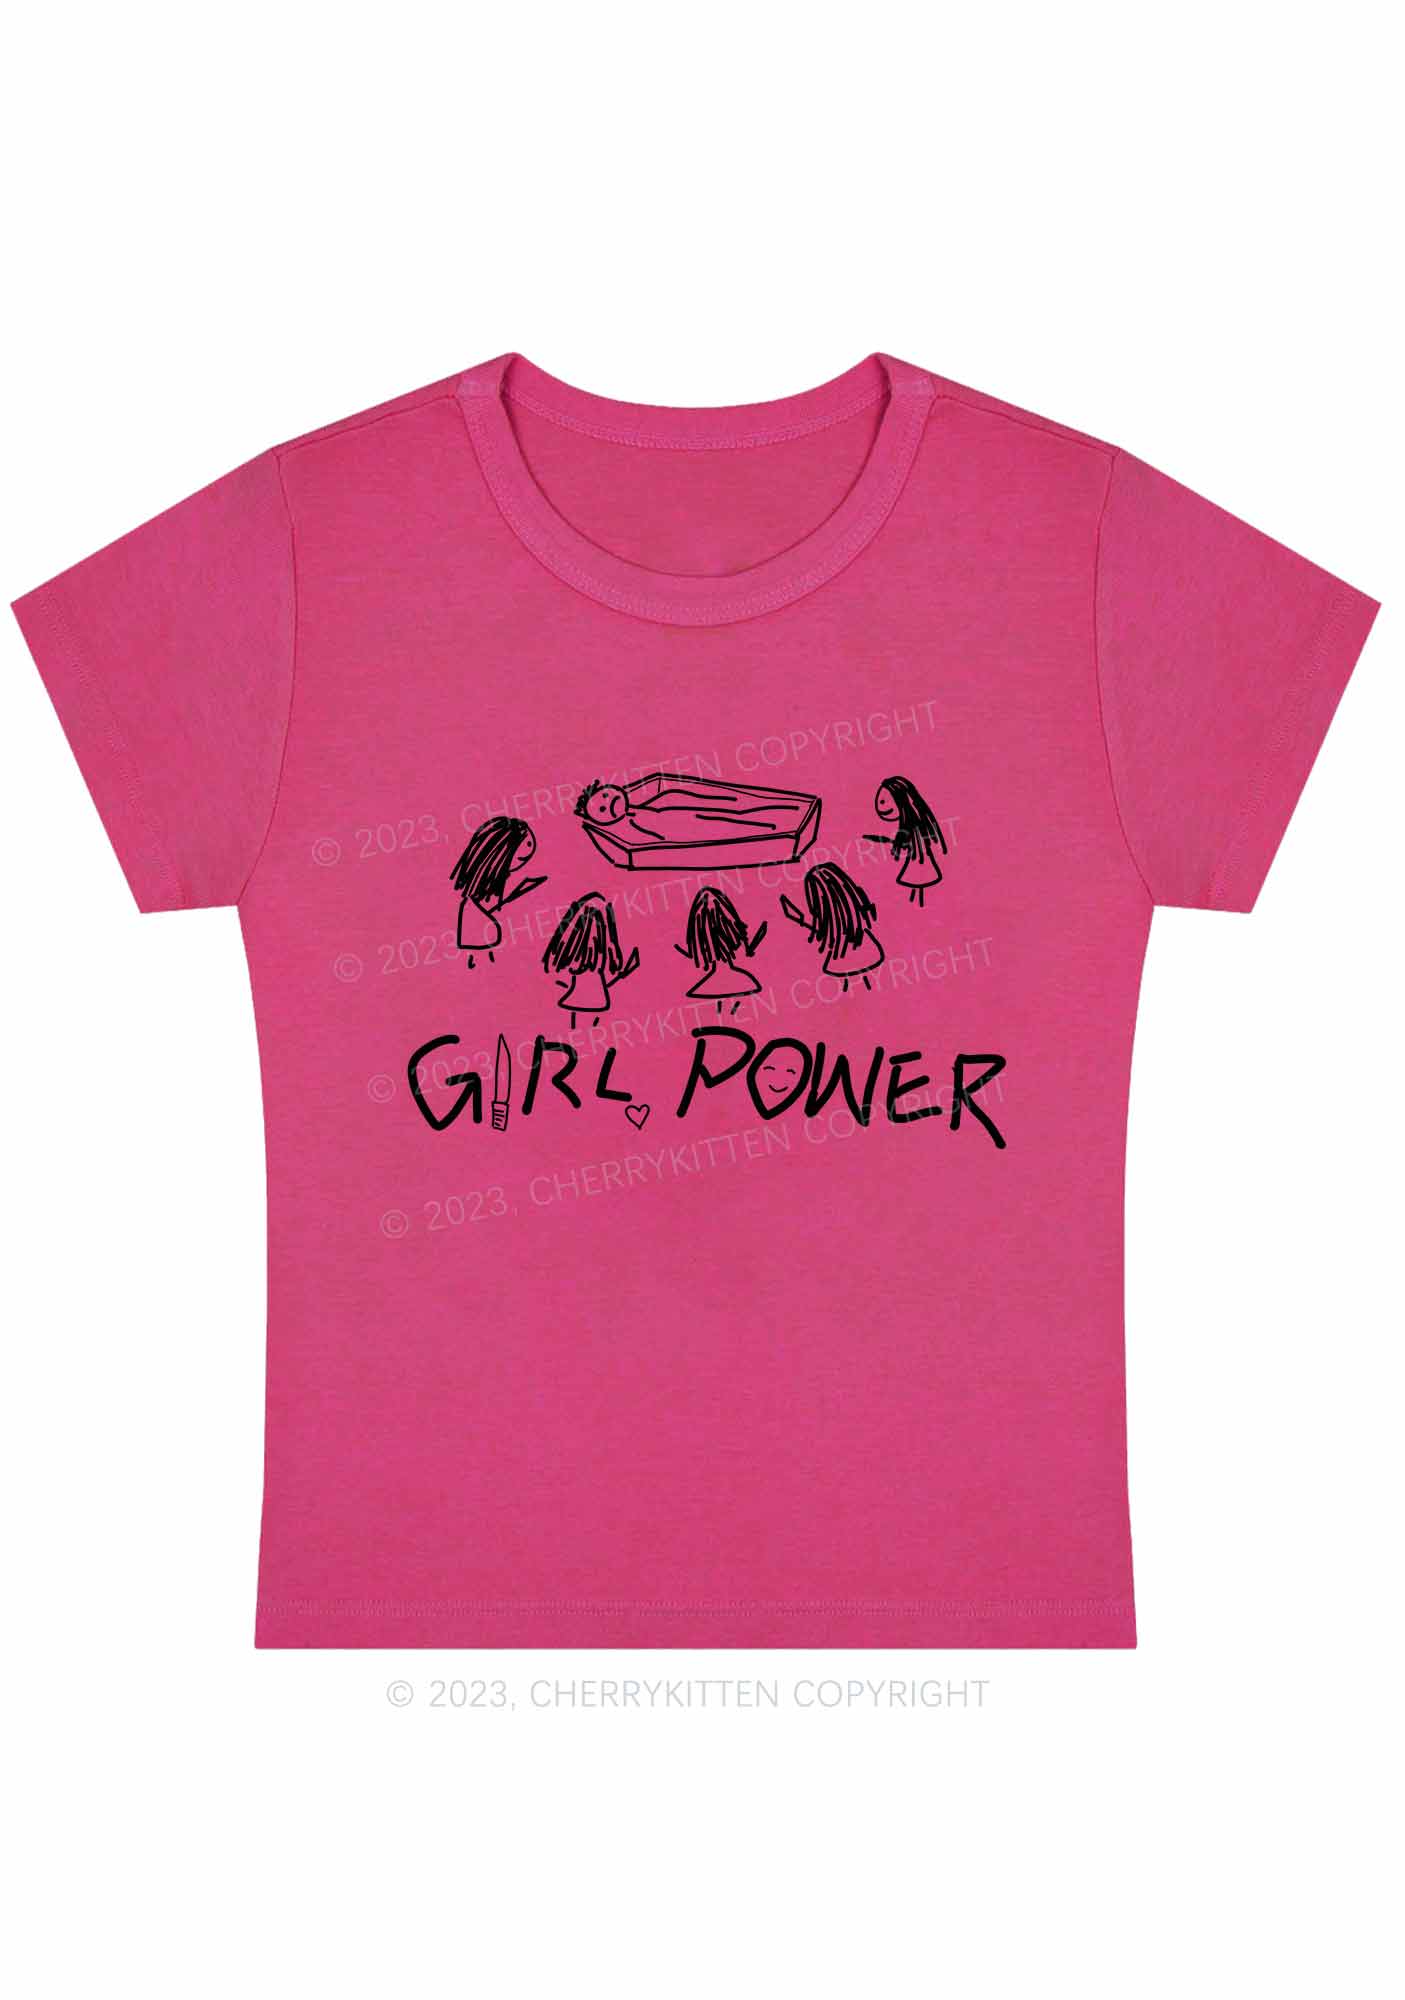 Girls Power Y2K Baby Tee Cherrykitten